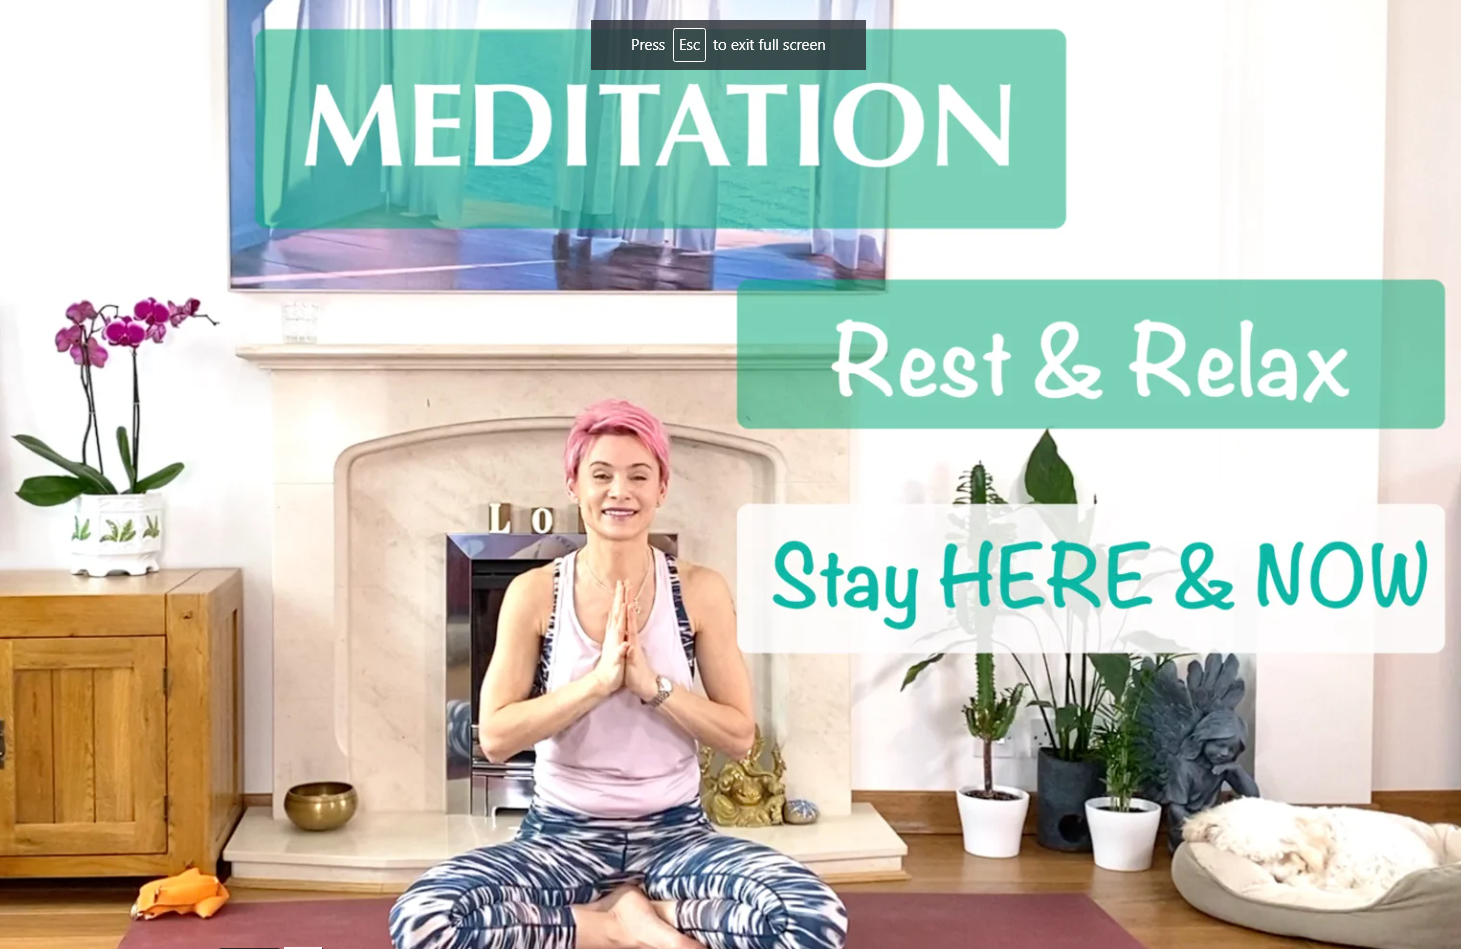 Olga Oakenfold - Meditation. Bring Your Mind Here & Now (8 min)